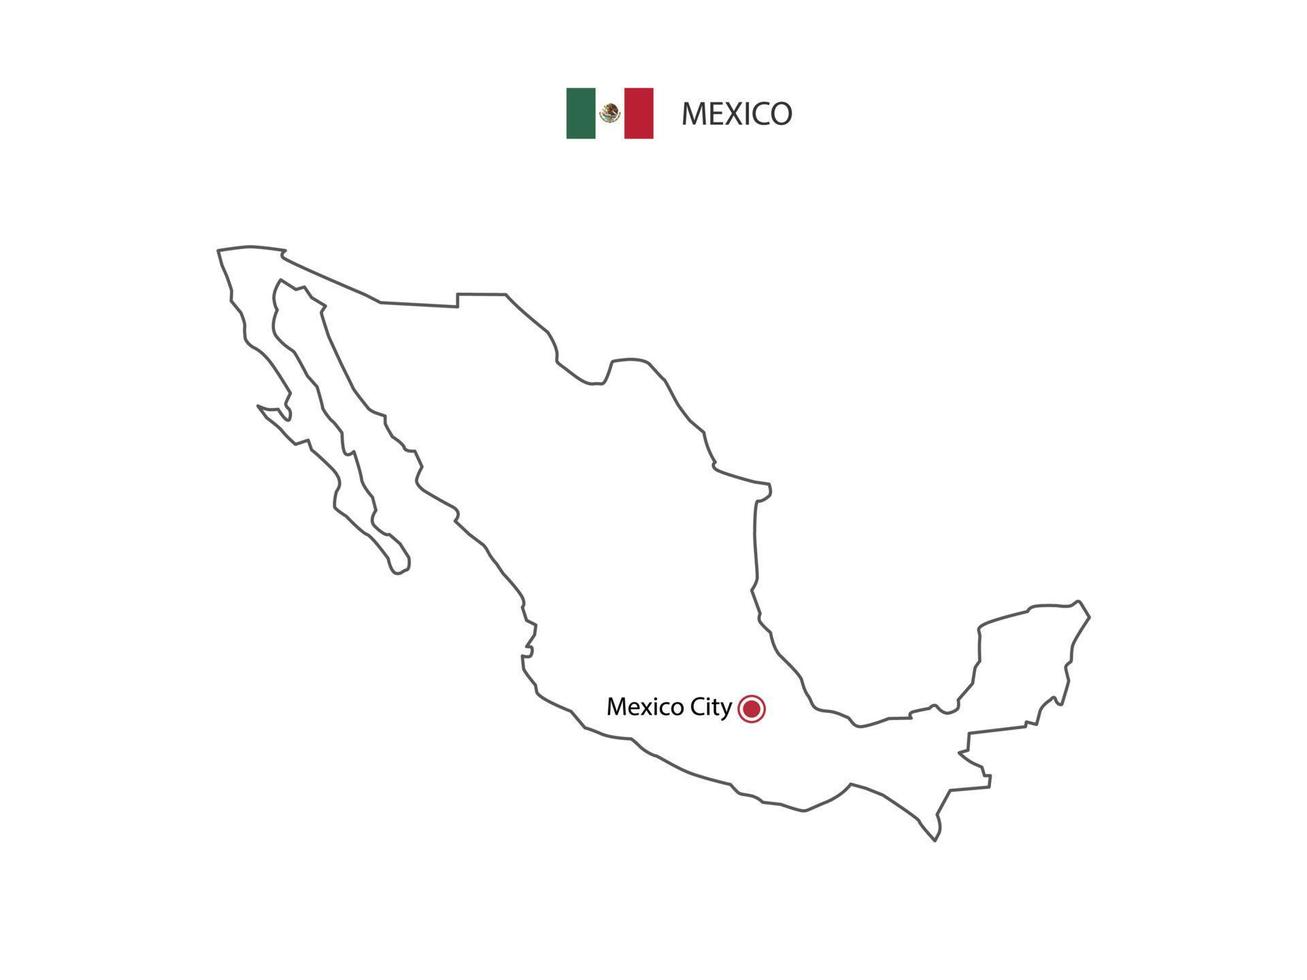 mão desenhar vetor de linha preta fina do mapa do méxico com capital cidade do méxico em fundo branco.